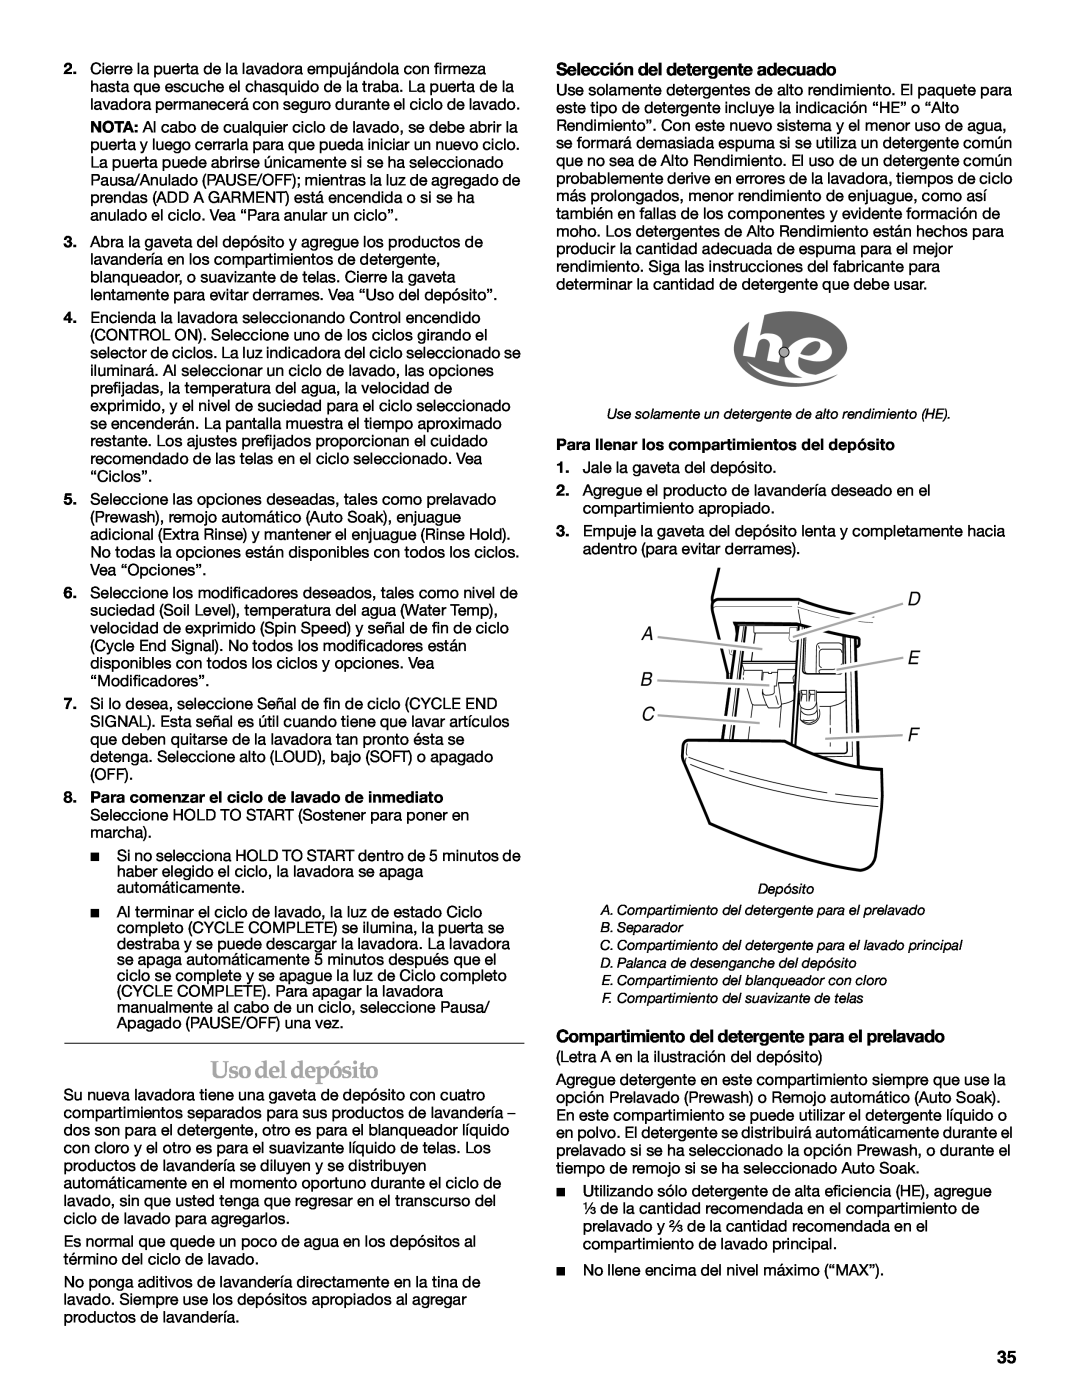 Maytag 8182969 manual Uso del depósito, Selección del detergente adecuado, Compartimiento del detergente para el prelavado 